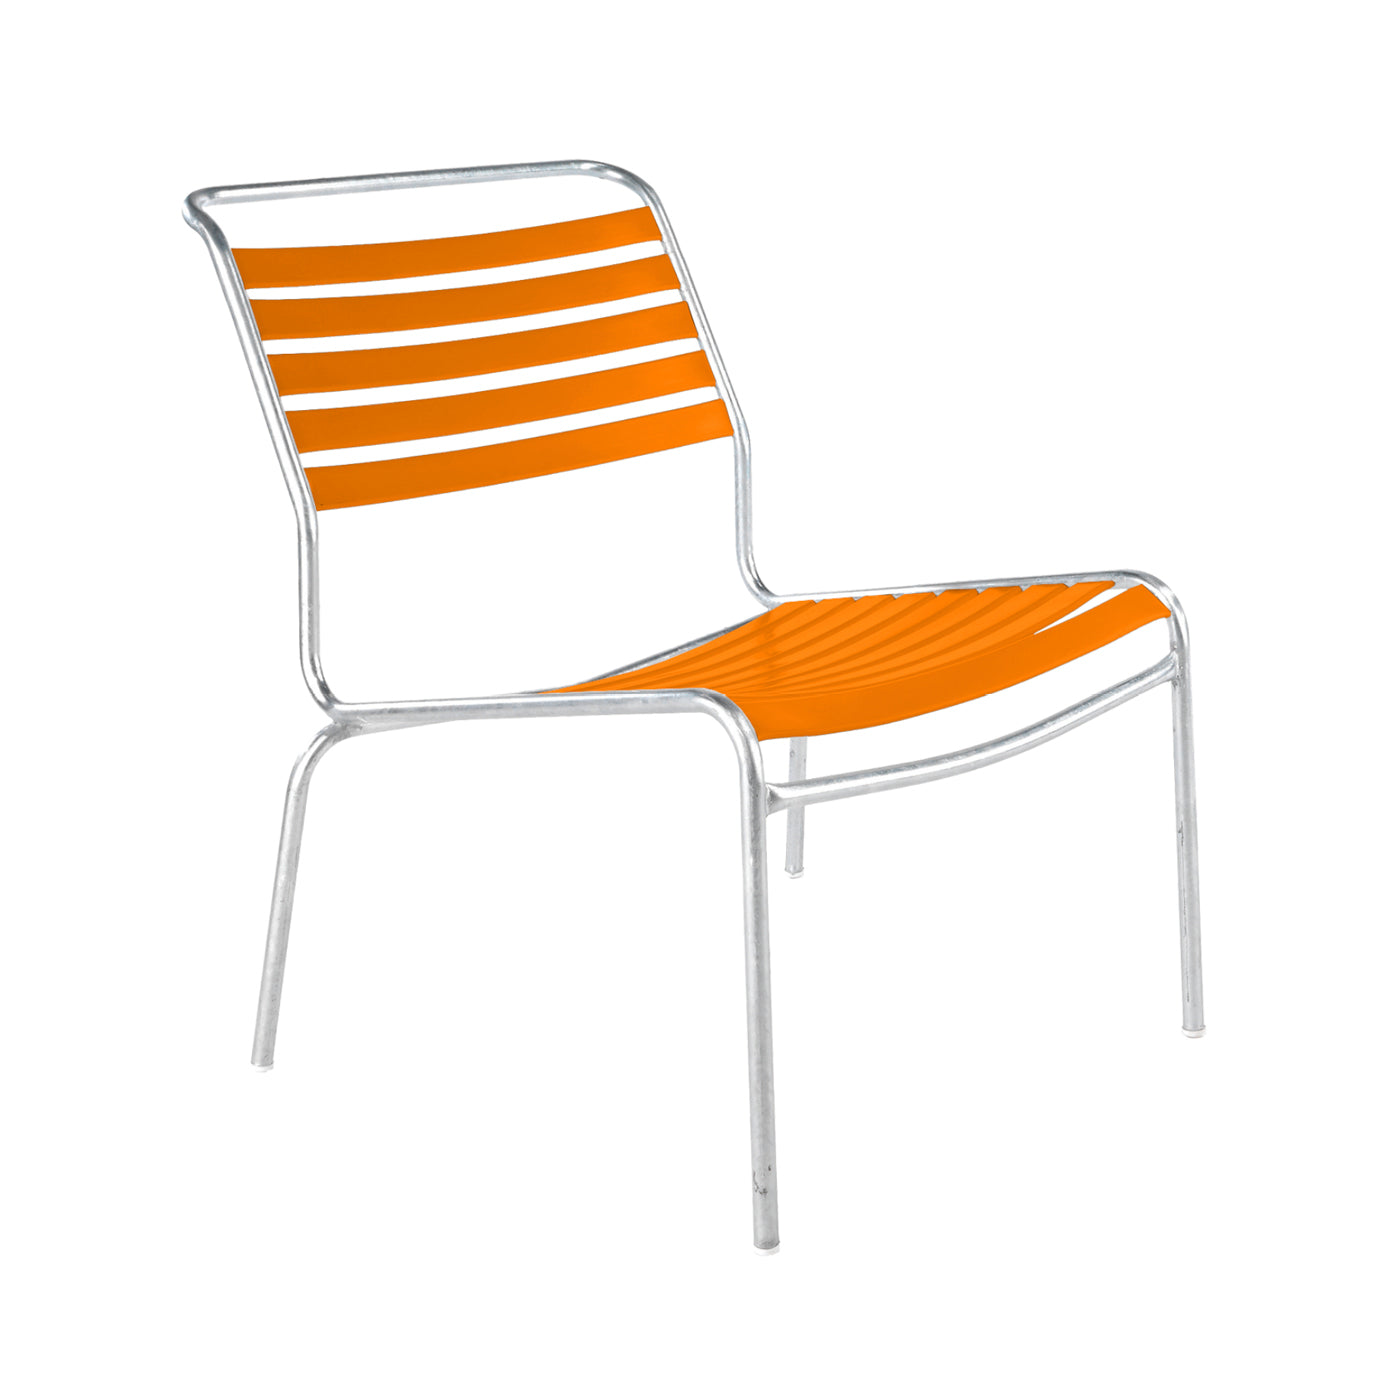 Schaffner Lättli Lounge Chair – Säntis ohne Armlehne